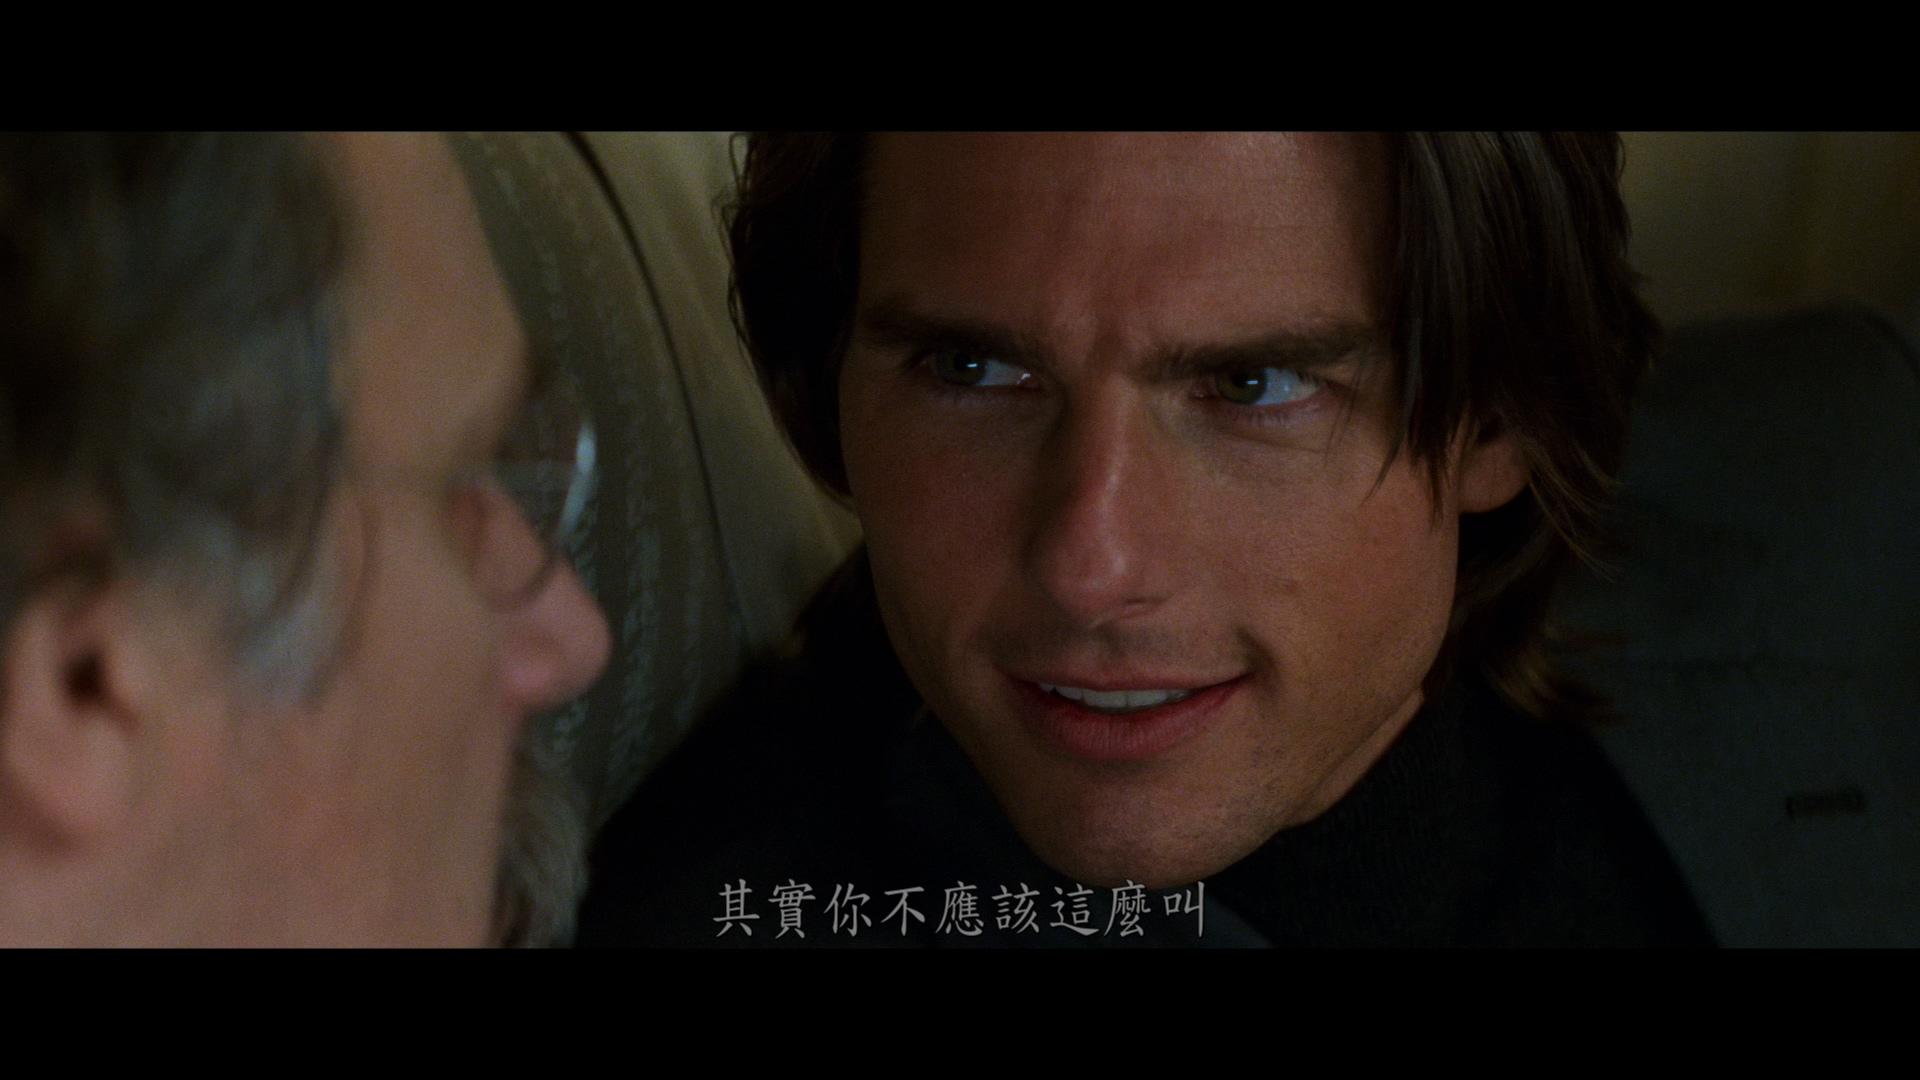 碟中谍2 [DIY简繁双语字幕] 4K UHD原盘 [保留dolby vision] Mission Impossible II 2000 2160p UHD Blu-ray HEVC TrueHD 5.1-wezjh@OurBits    [54.78 GB]-4.jpg